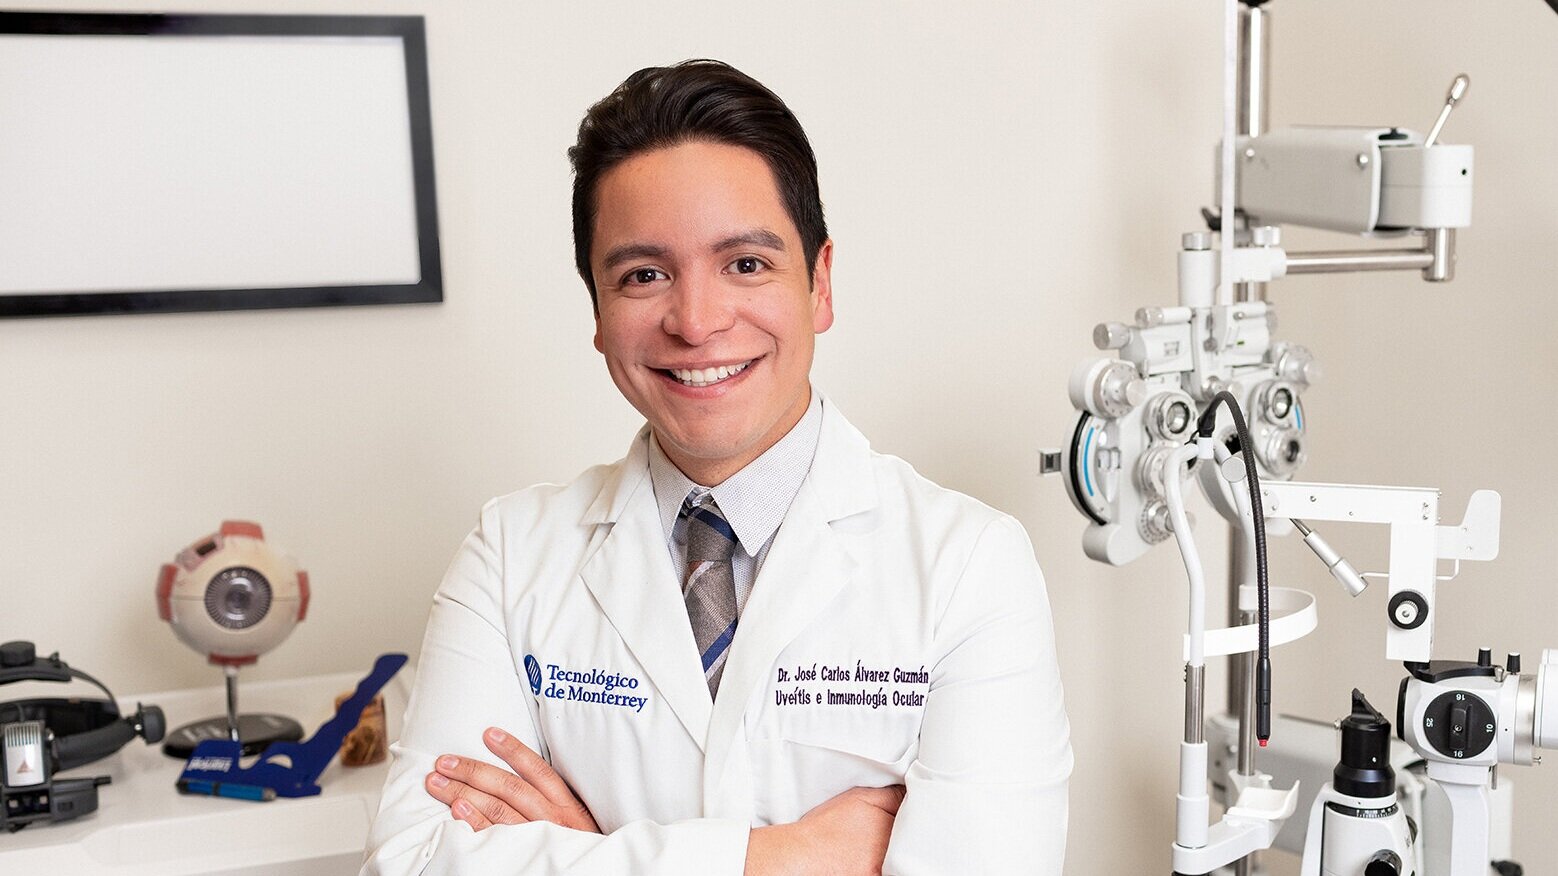 Dr Carlos Oftalmolog